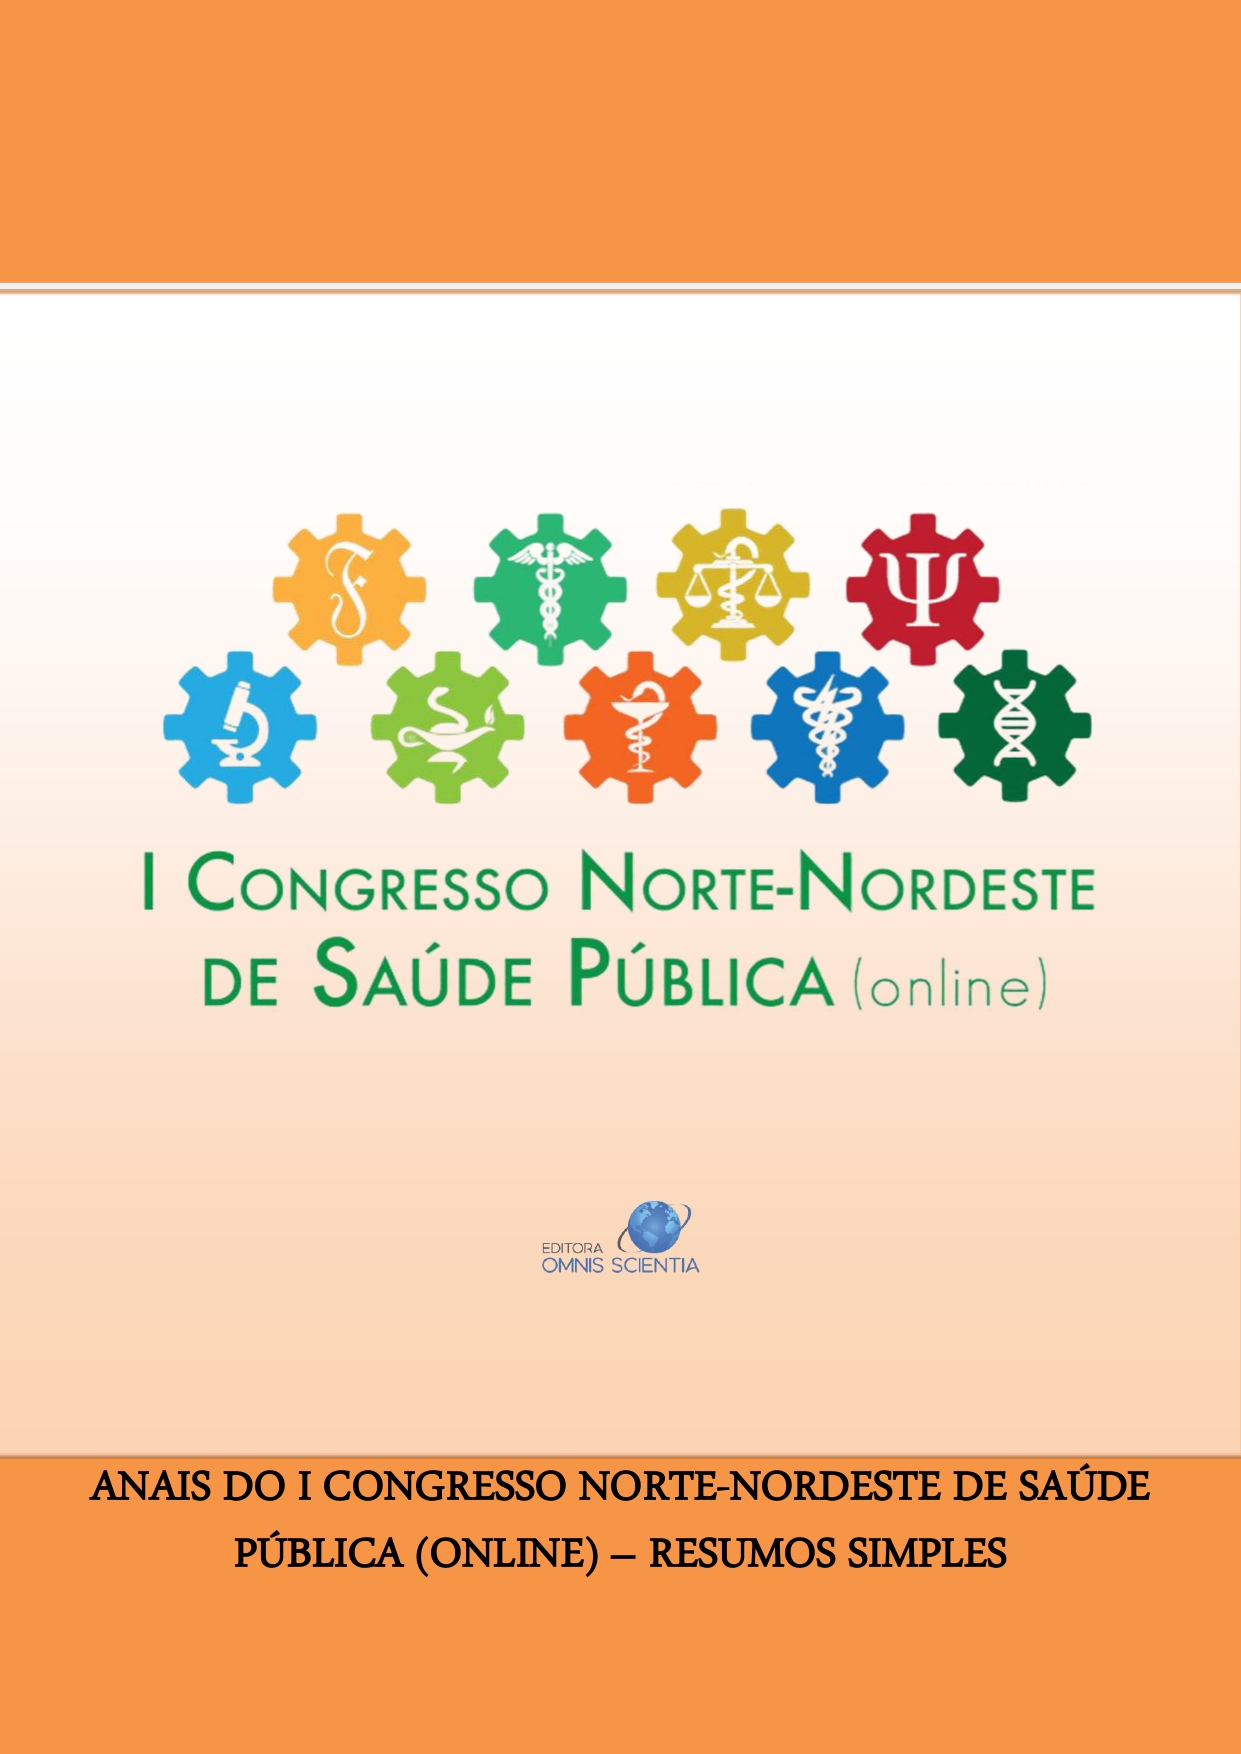 ANAIS DO I CONGRESSO NORTE-NORDESTE DE SAÚDE PÚBLICA (ONLINE) – RESUMOS SIMPLES